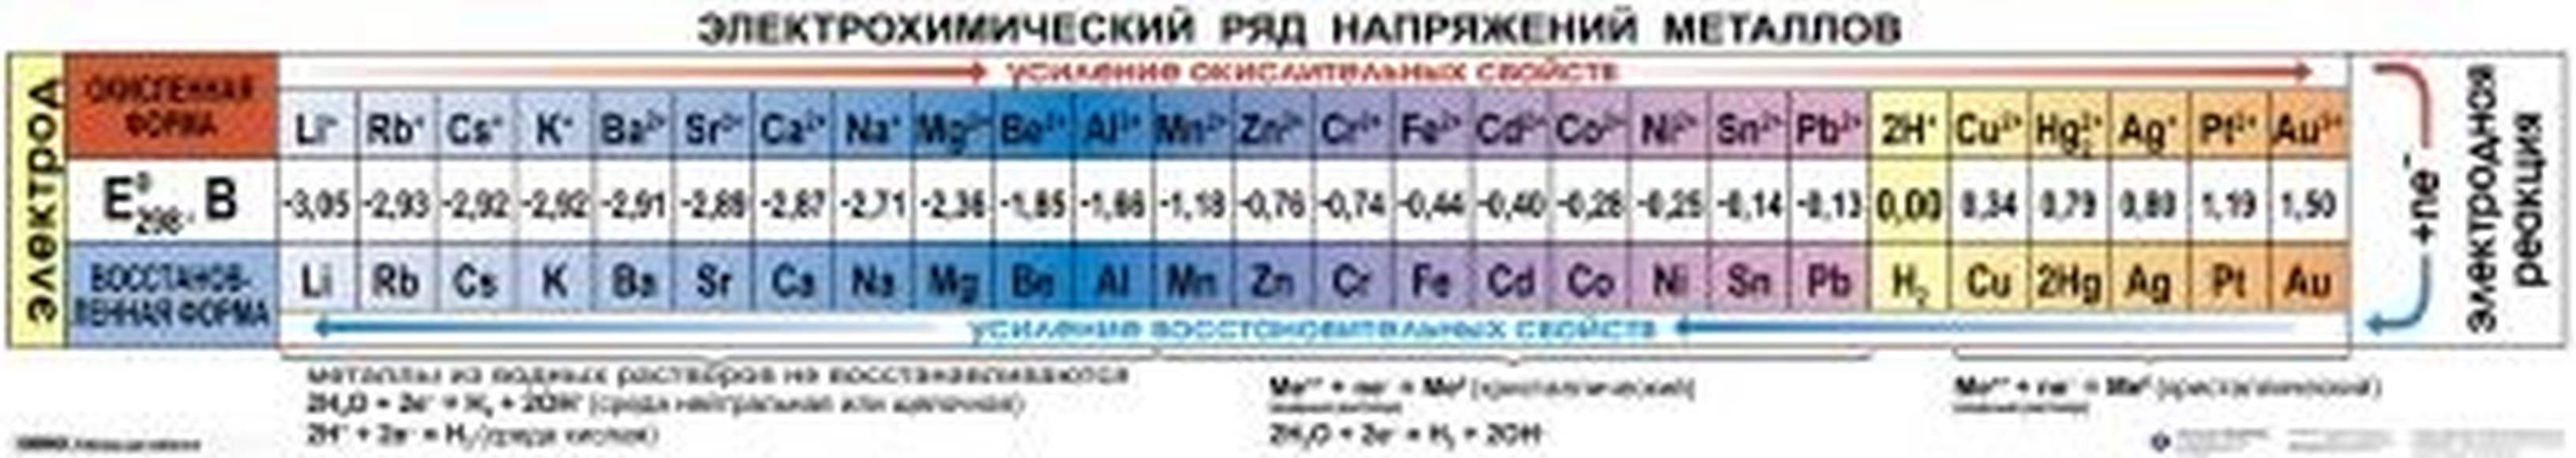 Справочные таблицы для кабинетов химии  (5-11 кл), Комплект таблиц и карточек, 14 таблиц (50х70 см);